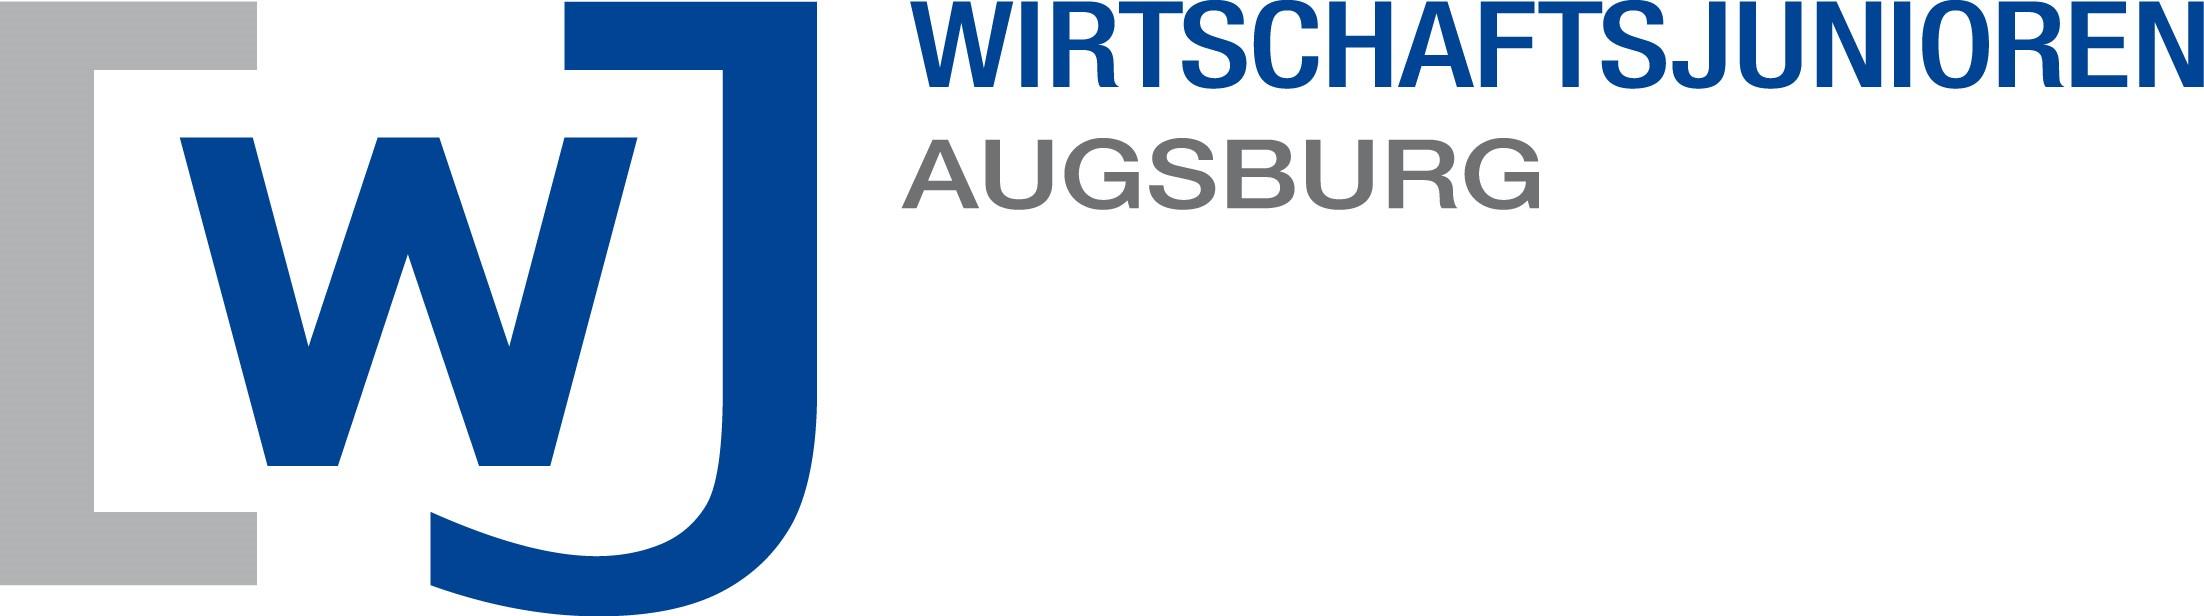 Logo der Wirtschaftsjunioren Augsburg